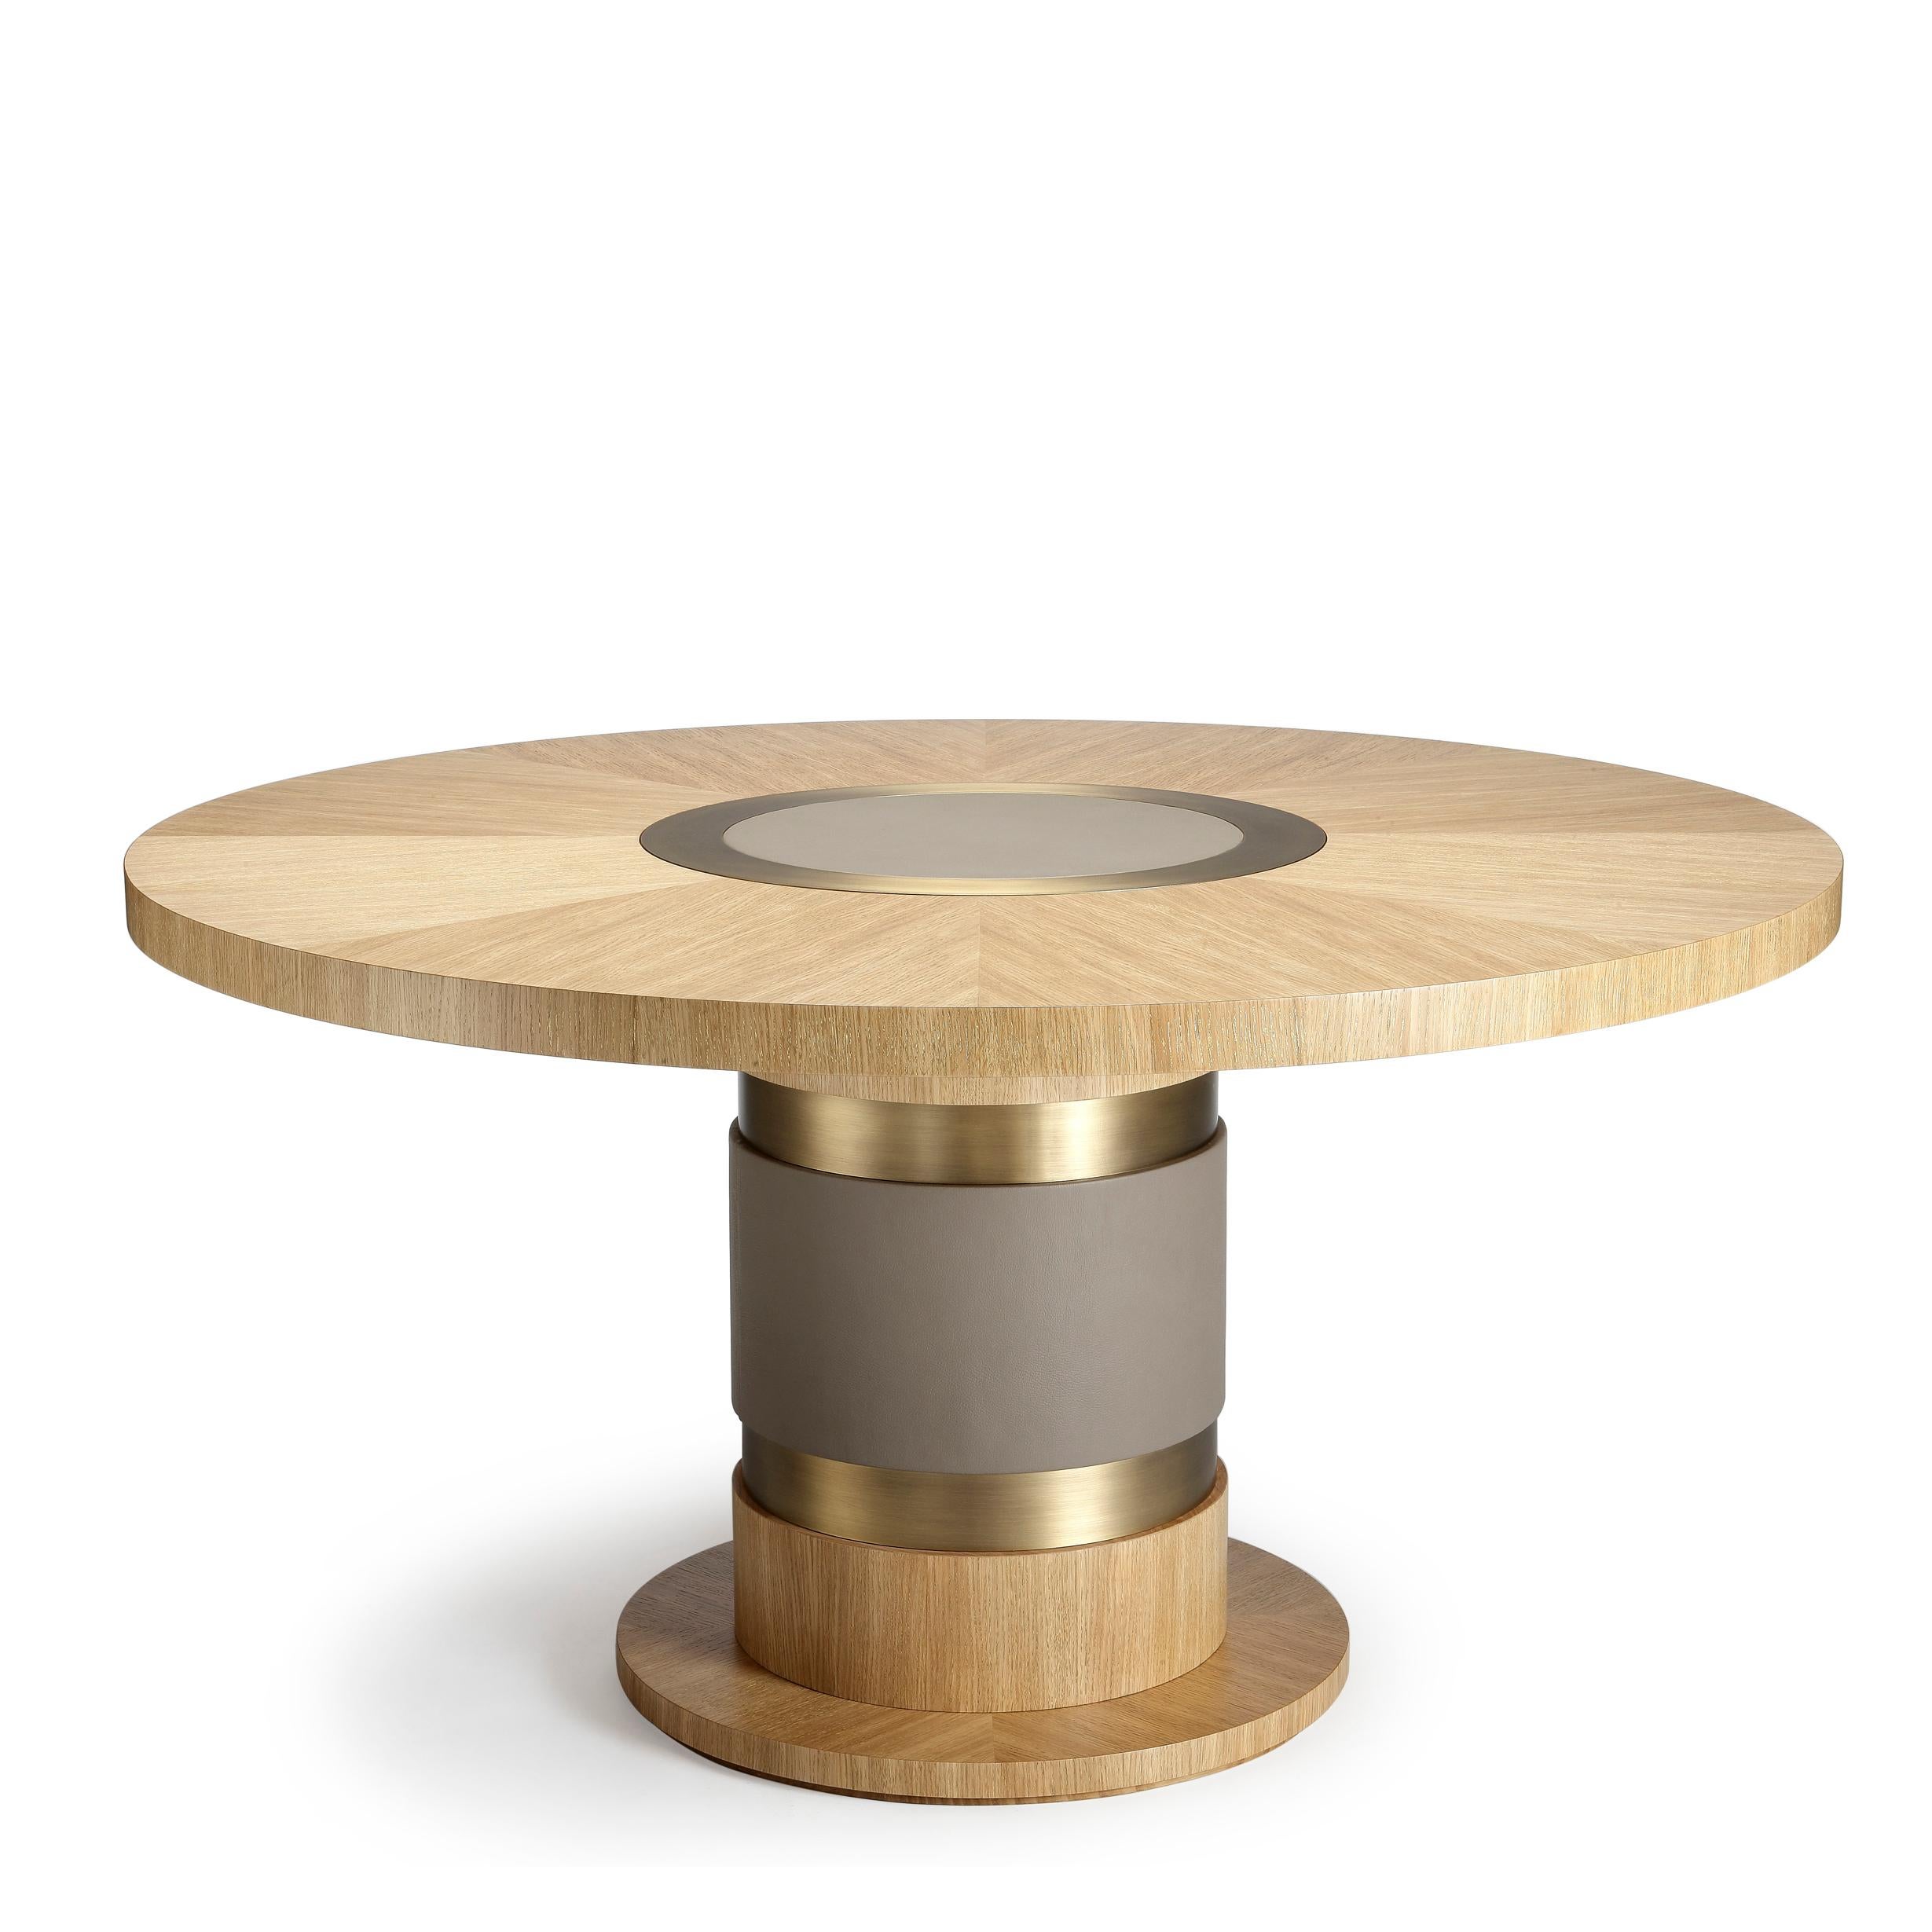 Table Lune, en chêne chaulé doré, détails en bronze et cuir, fabriquée à la main par Duistt

La table Lune est un parfait exemple de la façon dont les matériaux mixtes peuvent s'associer pour créer une pièce vraiment unique. La combinaison d'un